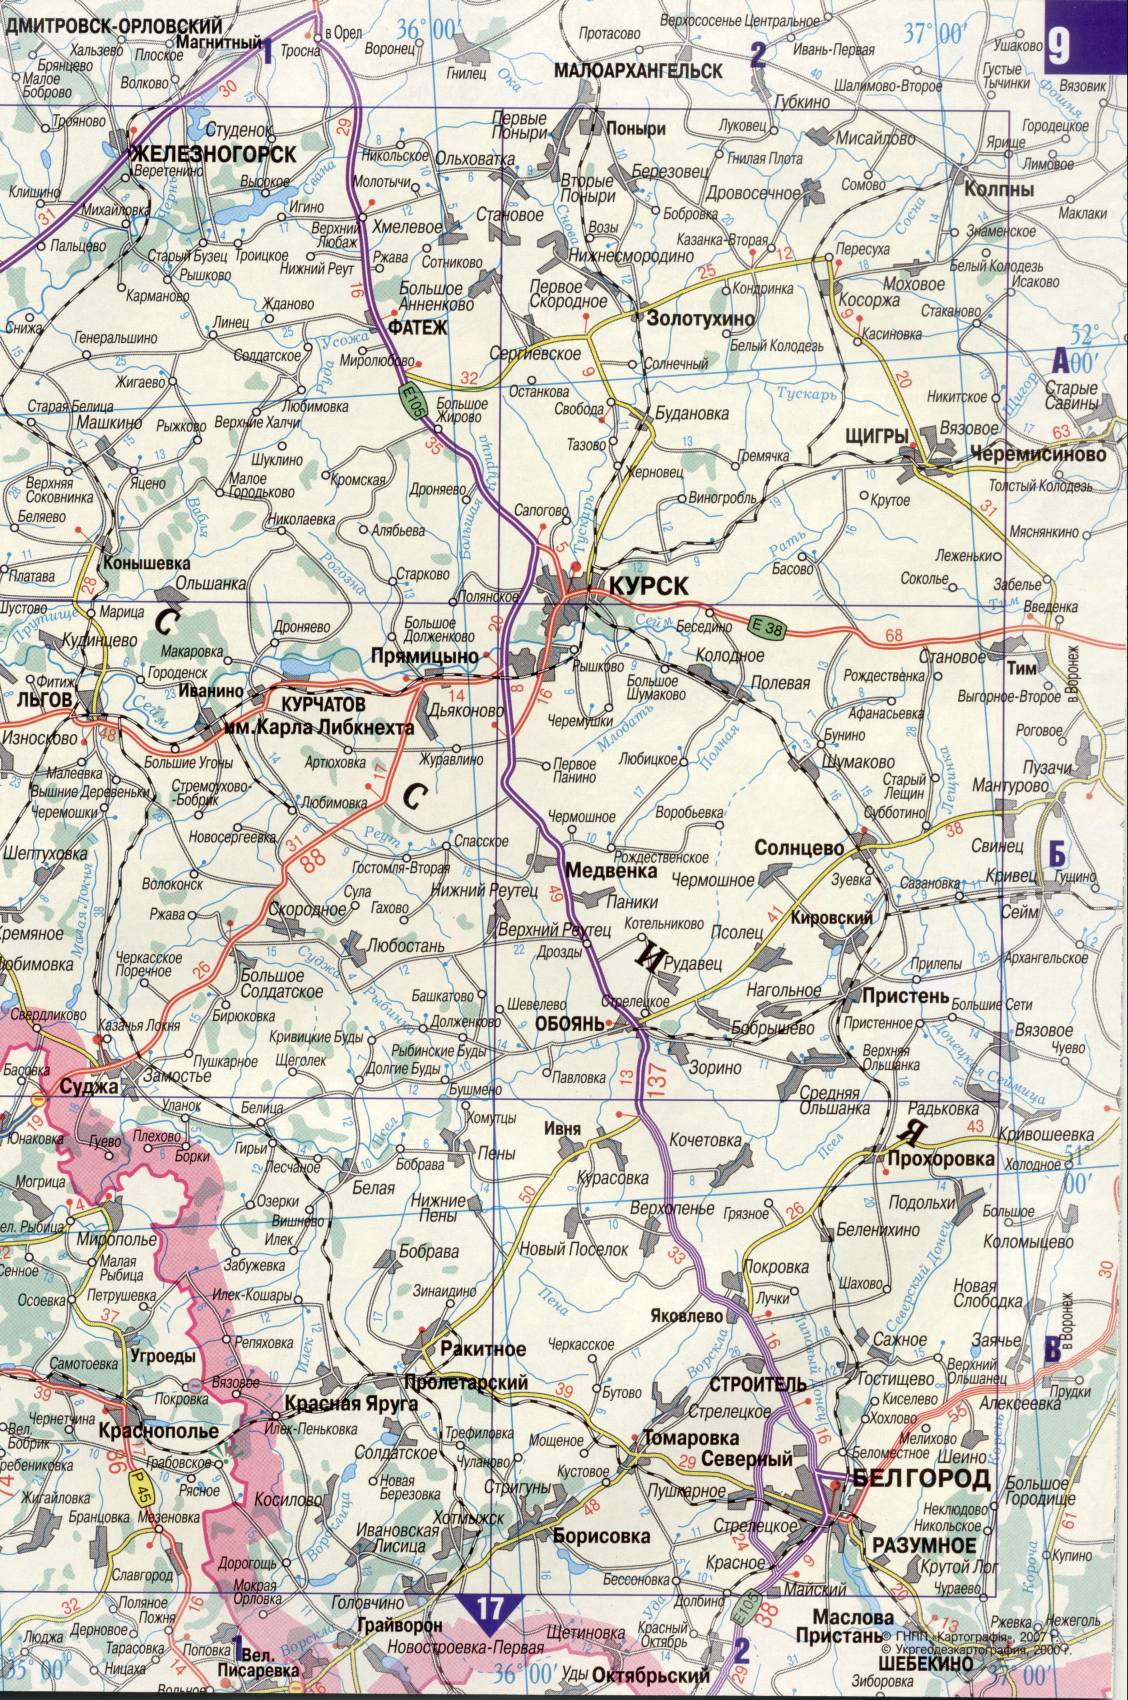 Карта Украины. Подробная карта дорог Украина из автомобильног атласа. скачать бесплатно, H0